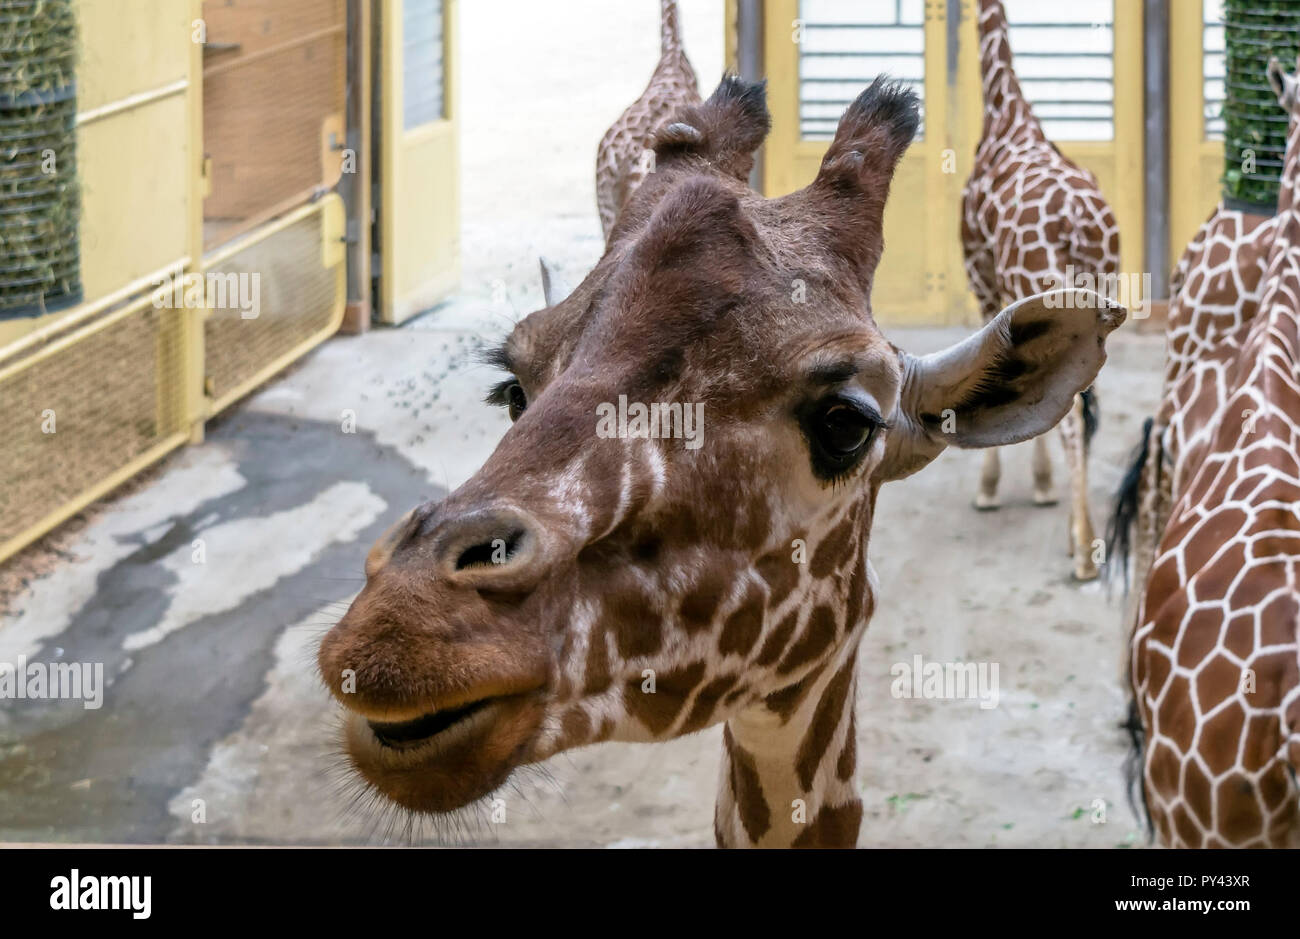 Closeup portrait of Reticulated giraffe (Giraffa camelopardalis reticulata), also known as the Somali giraffe. Stock Photo